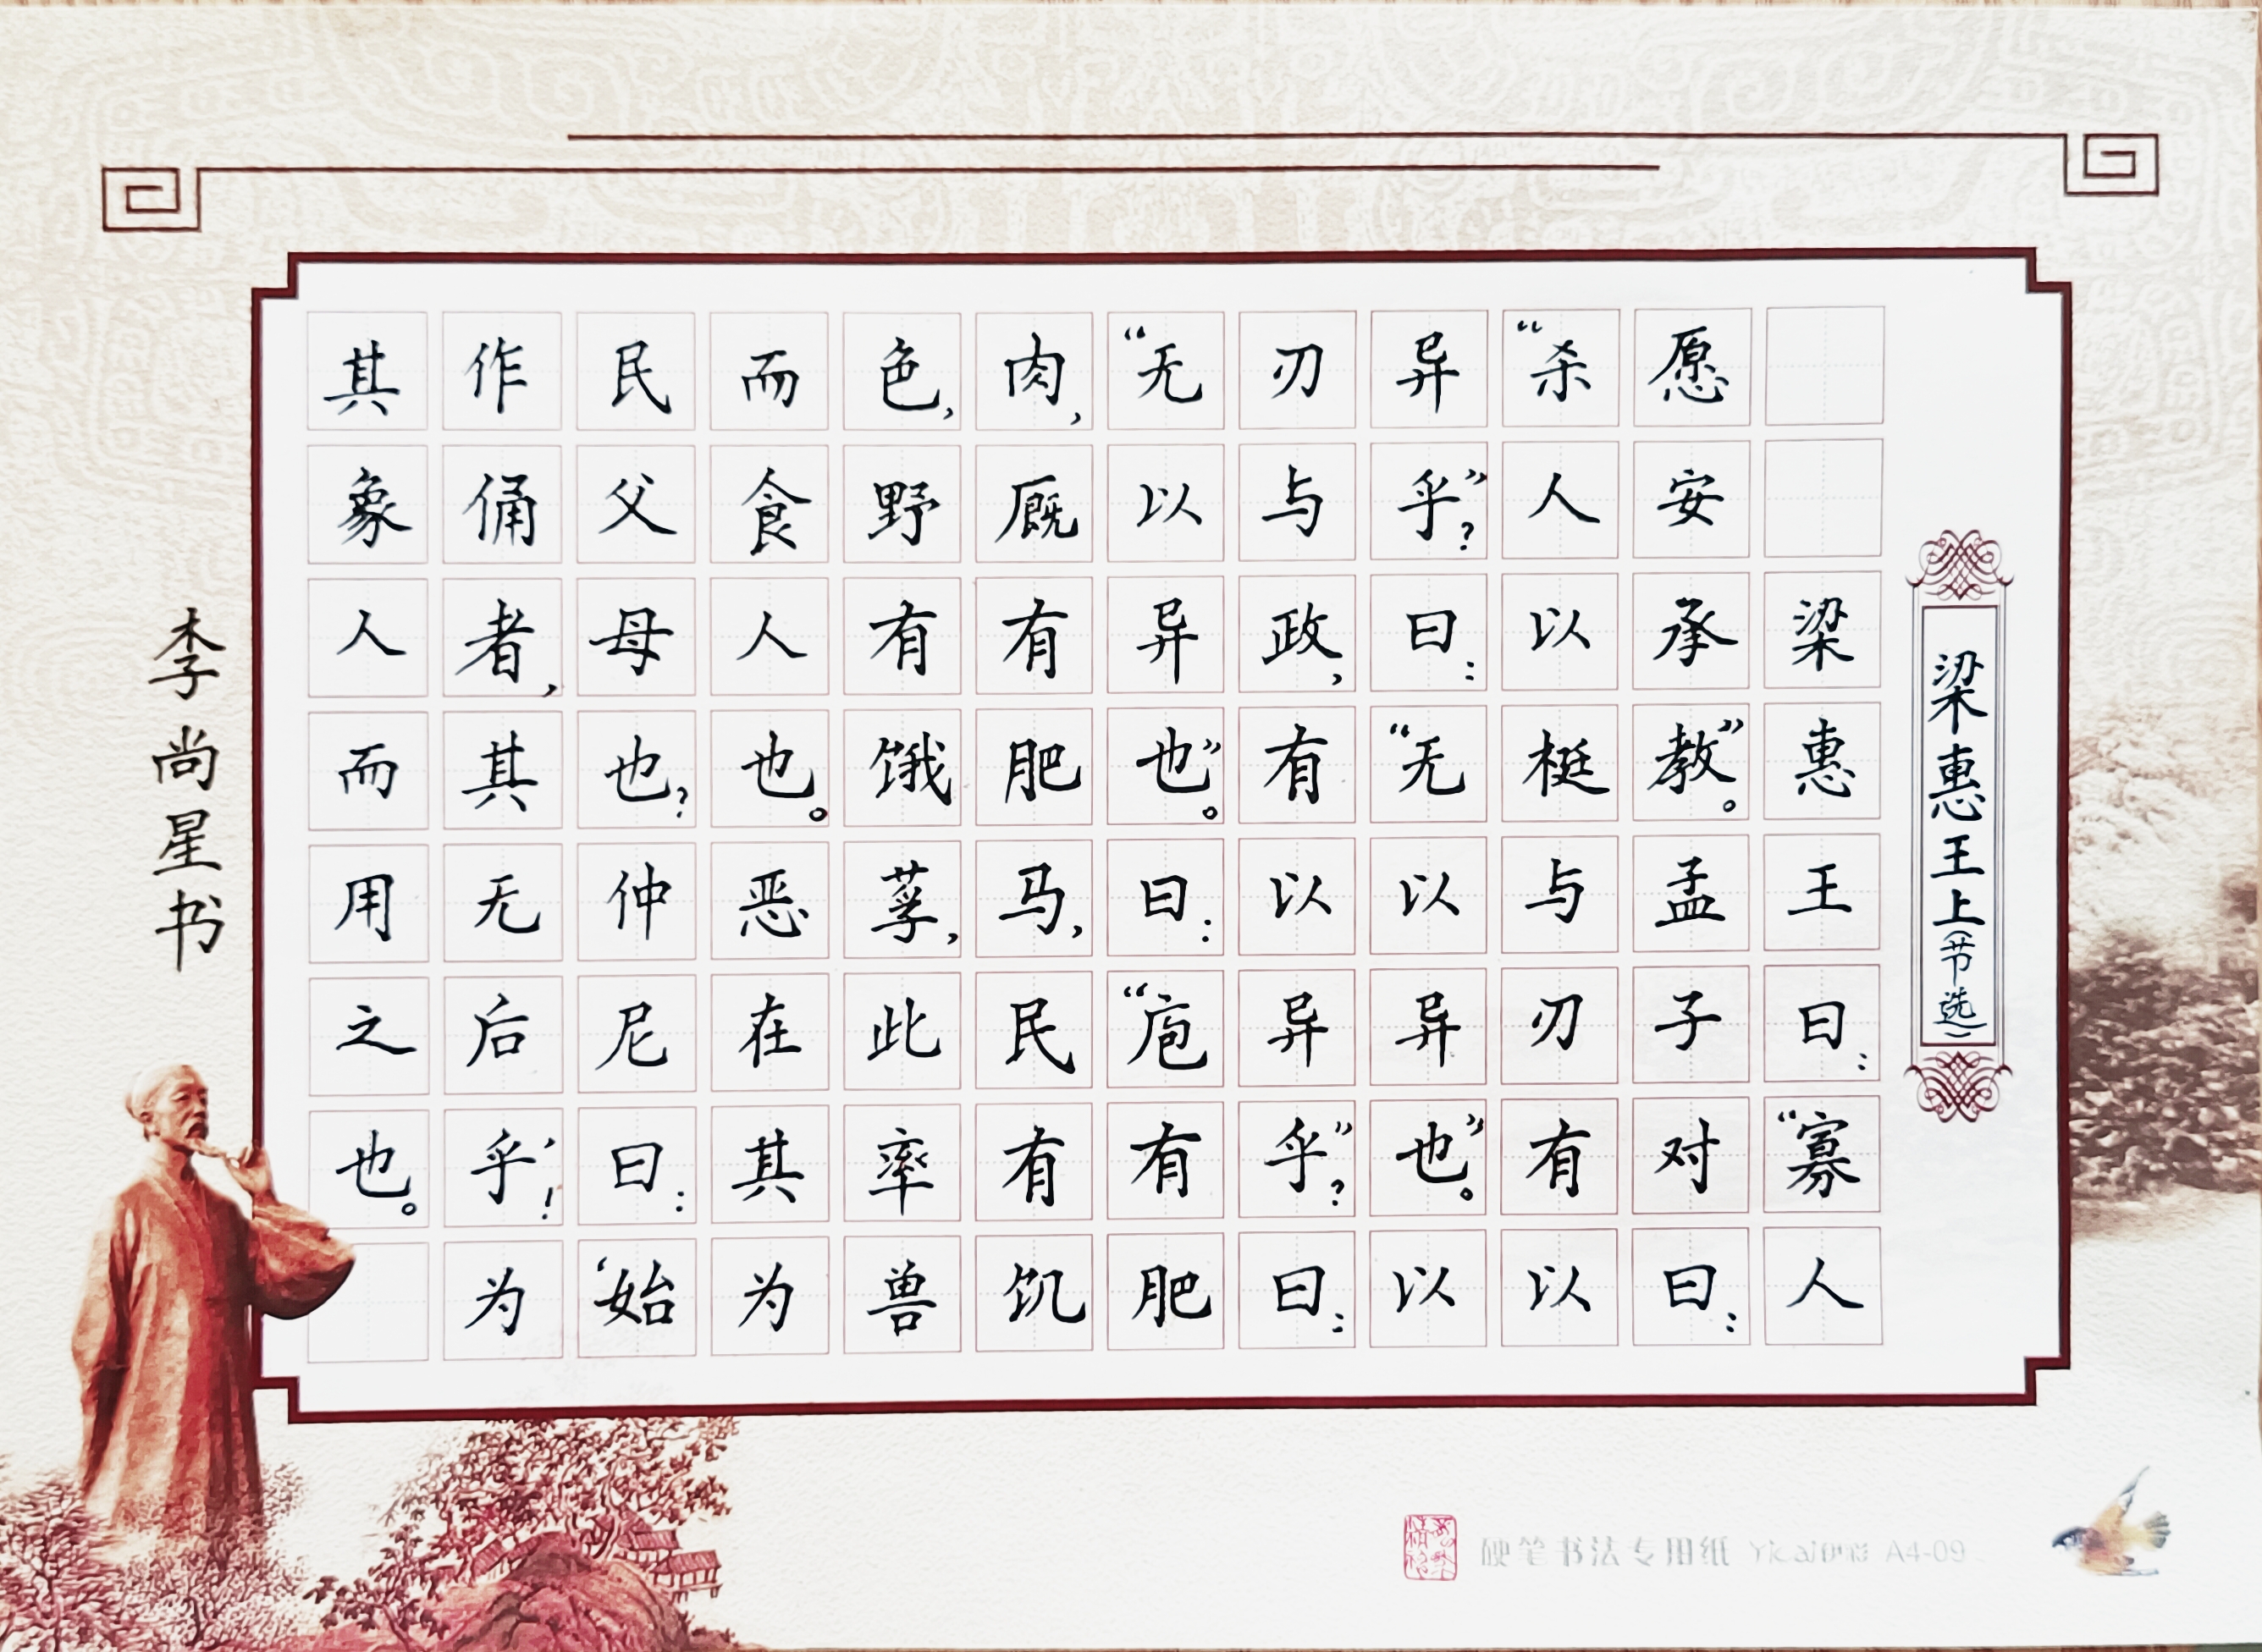 中国大众文化学会名人书画艺术发展委员会——李尚星